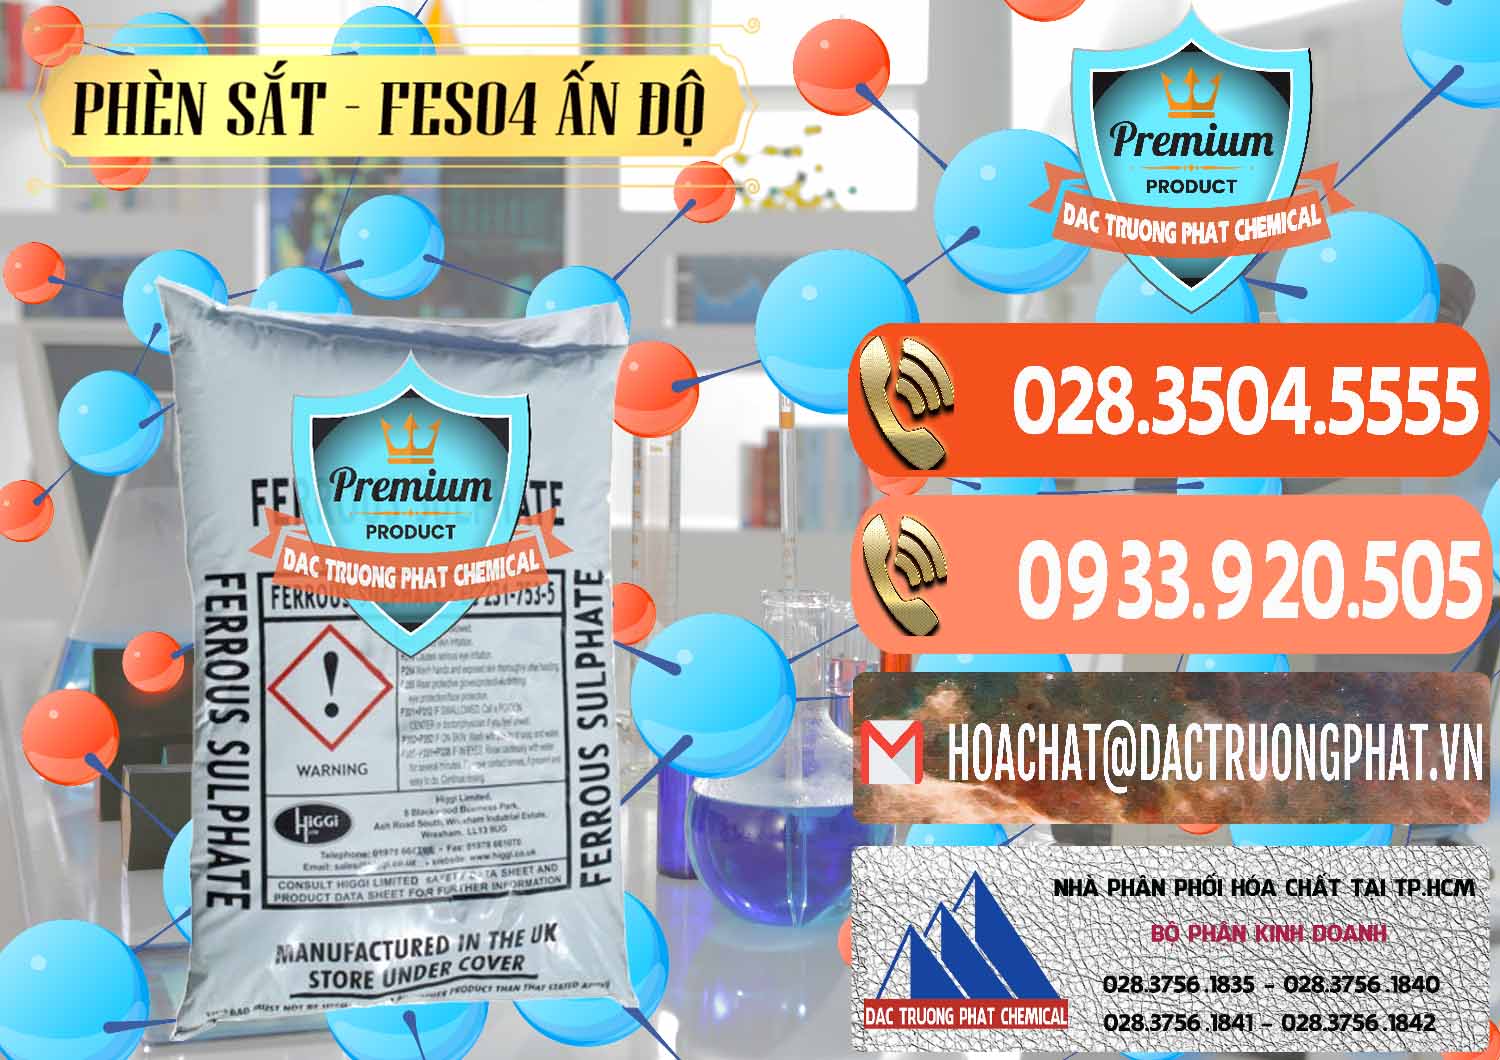 Cty kinh doanh và bán Phèn Sắt - FeSO4.7H2O Ấn Độ India - 0354 - Chuyên cung cấp - nhập khẩu hóa chất tại TP.HCM - hoachatmientay.com